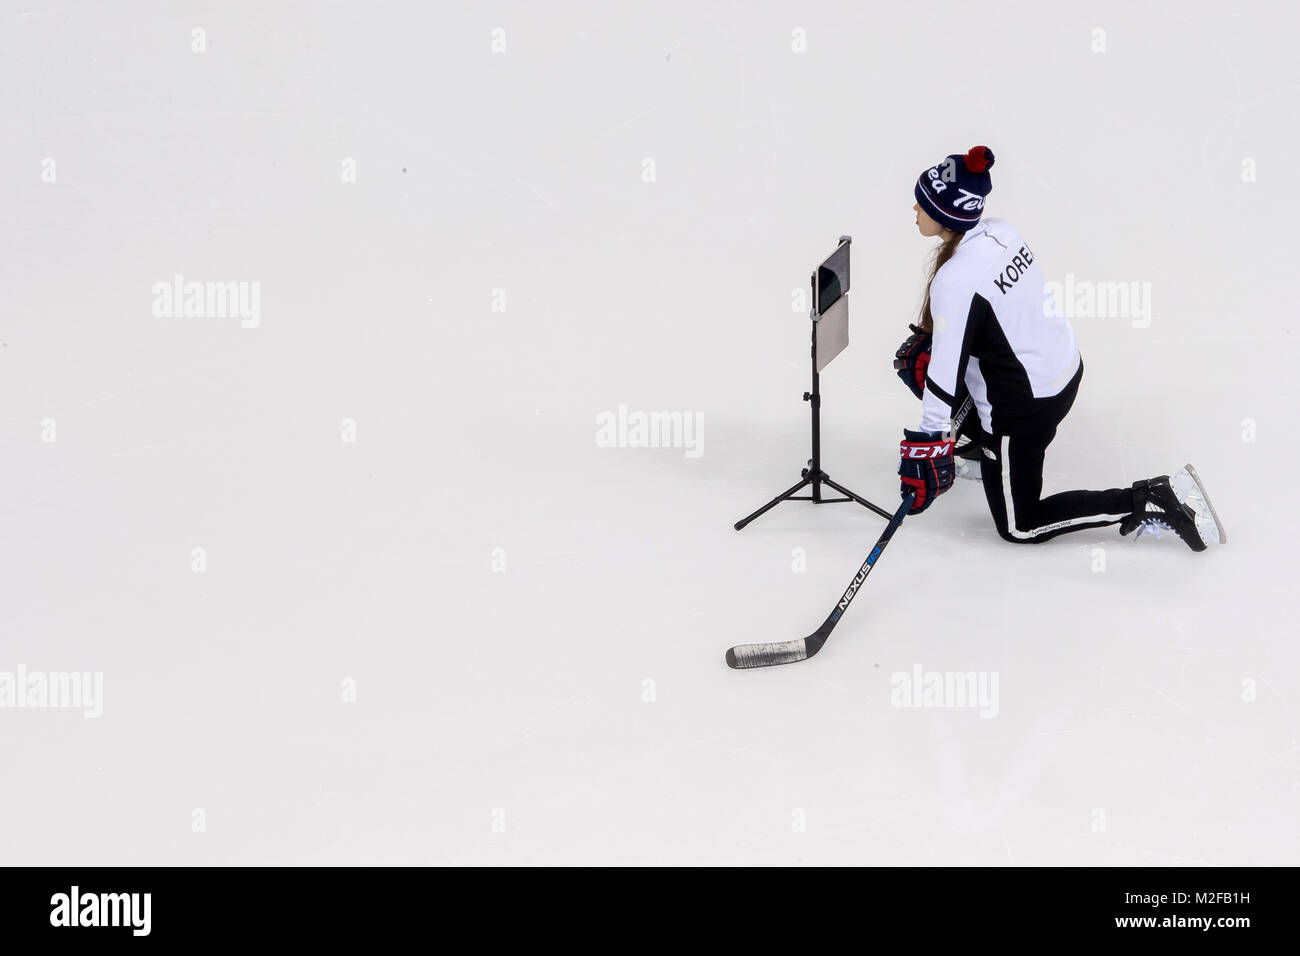 Gangneung, Corée du Sud. 07Th Feb 2018. Coréen de l'équipe féminine de hockey sur glace de la formation dans le centre de Hockey Kwandong à Gangneung, Corée du Sud, 07 février 2018. Une équipe olympique du Sud et du Nord à partir de joueurs de hockey sur glace va prendre part à la compétition à Pyeongchang. Les Jeux Olympiques d'hiver de 2018 à Pyeongchang ont lieu entre 09 et 25 février. Crédit : Peter Kneffel/dpa/Alamy Live News Banque D'Images